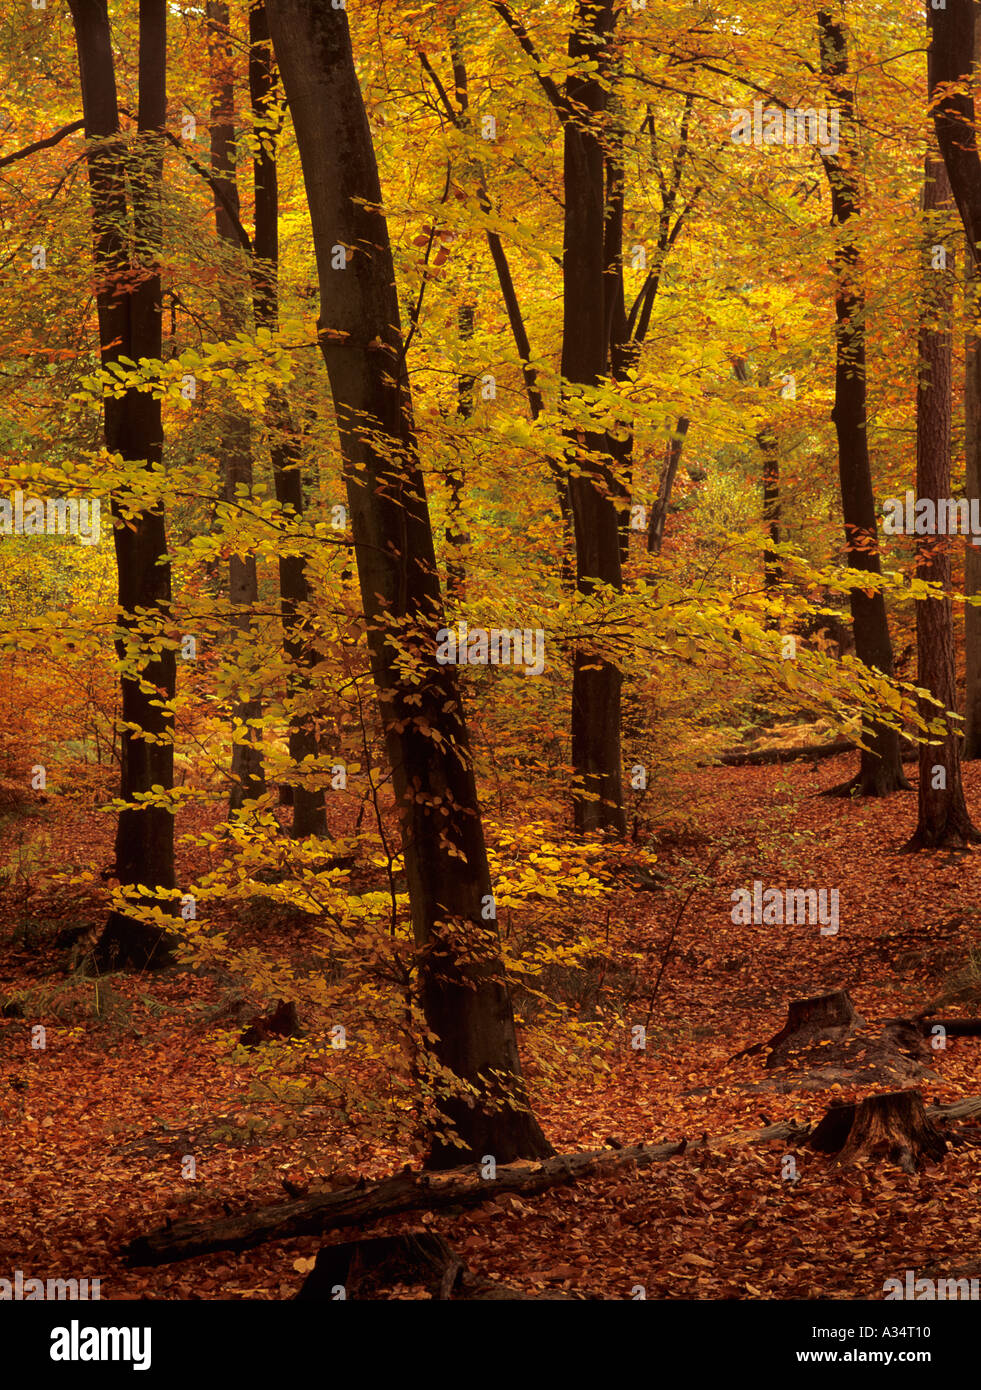 Buche Fagus sylvatica mit Bäumen im Herbst Herbst Farbe in der englischen Landschaft. Alice holt Forest Park Bentley Hampshire England Großbritannien Großbritannien Stockfoto